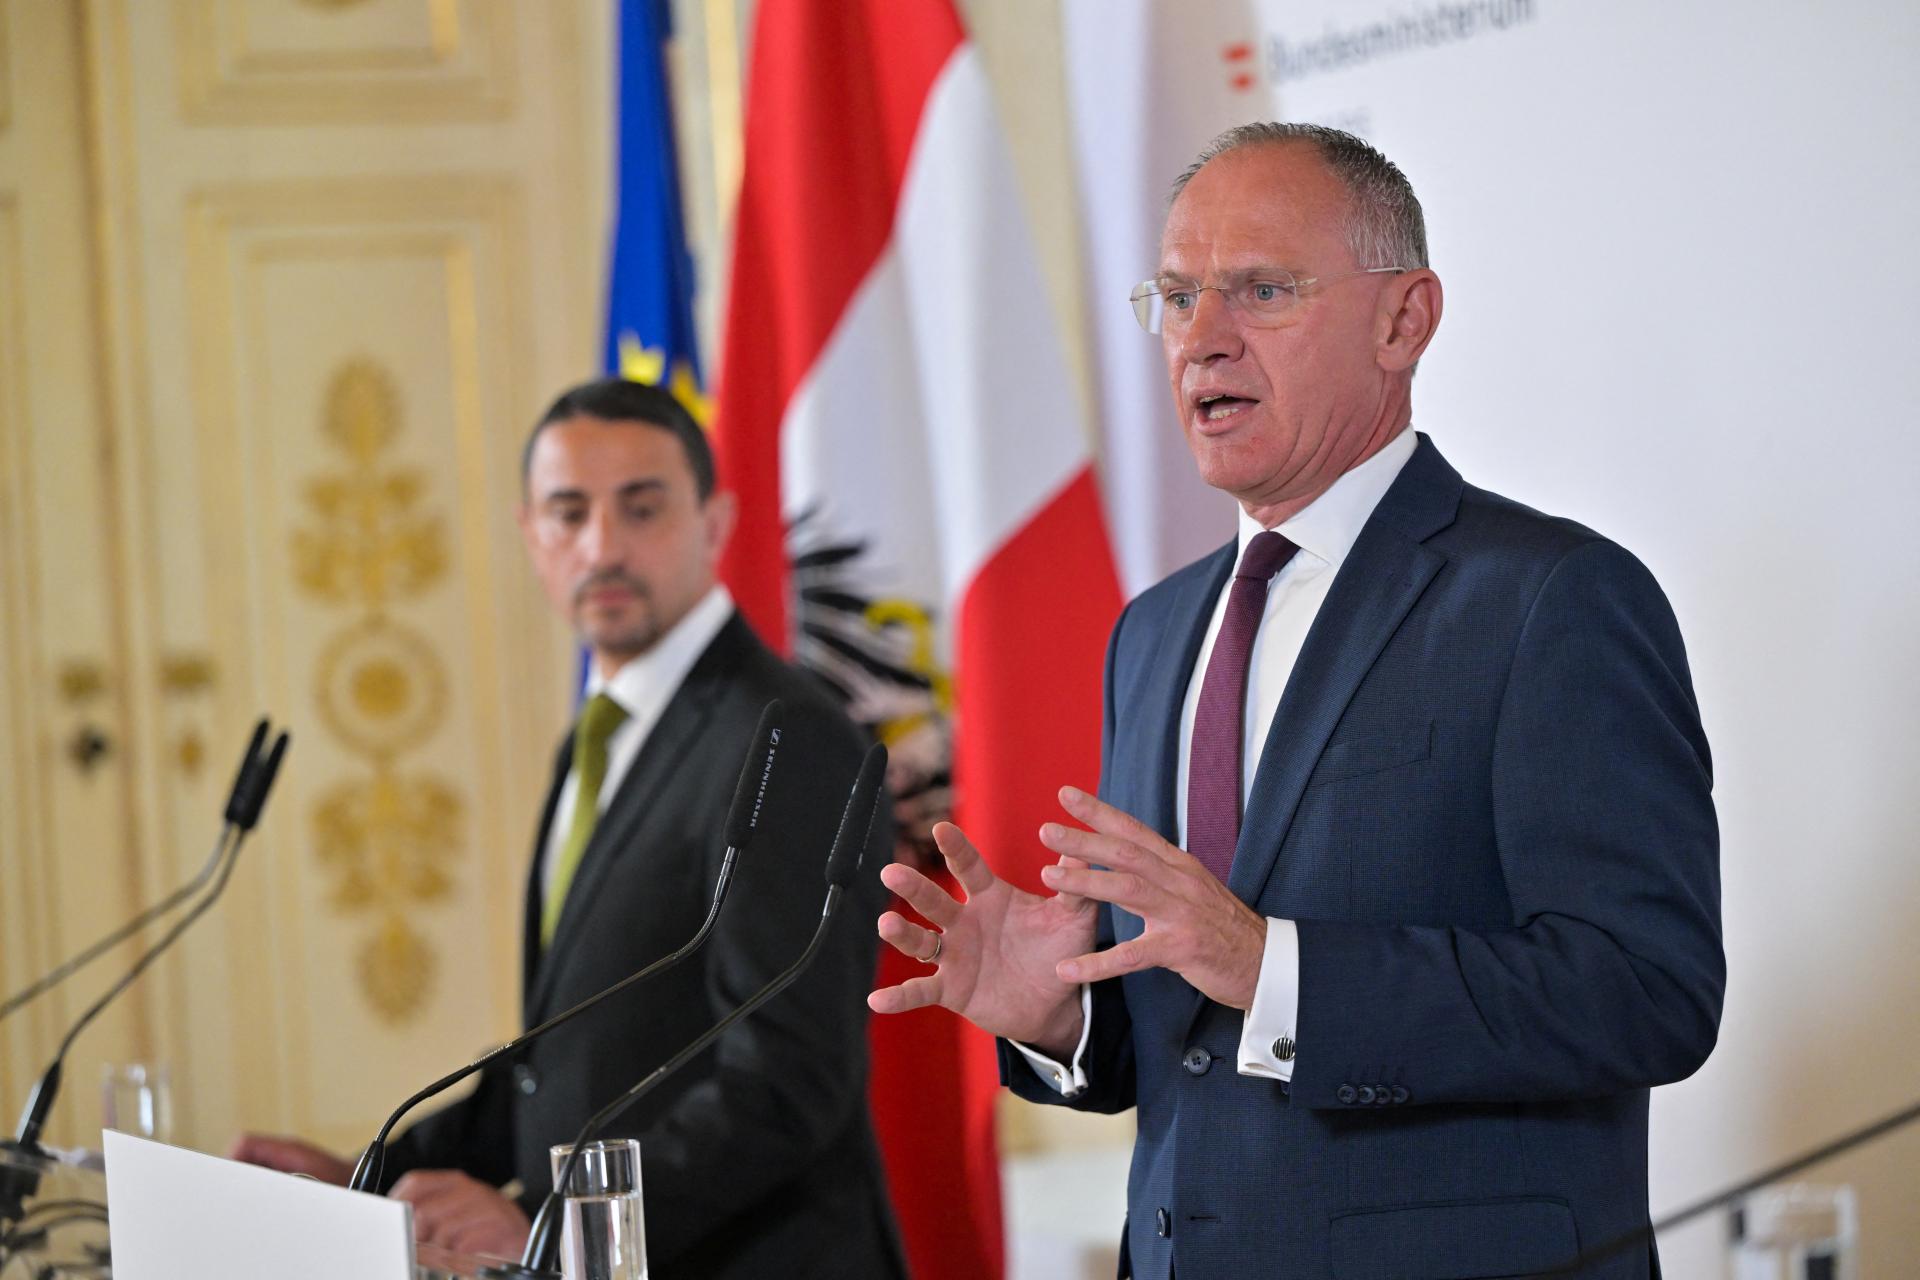 Opatrenia proti nelegálnym migrantom fungujú, tvrdí rakúsky minister vnútra